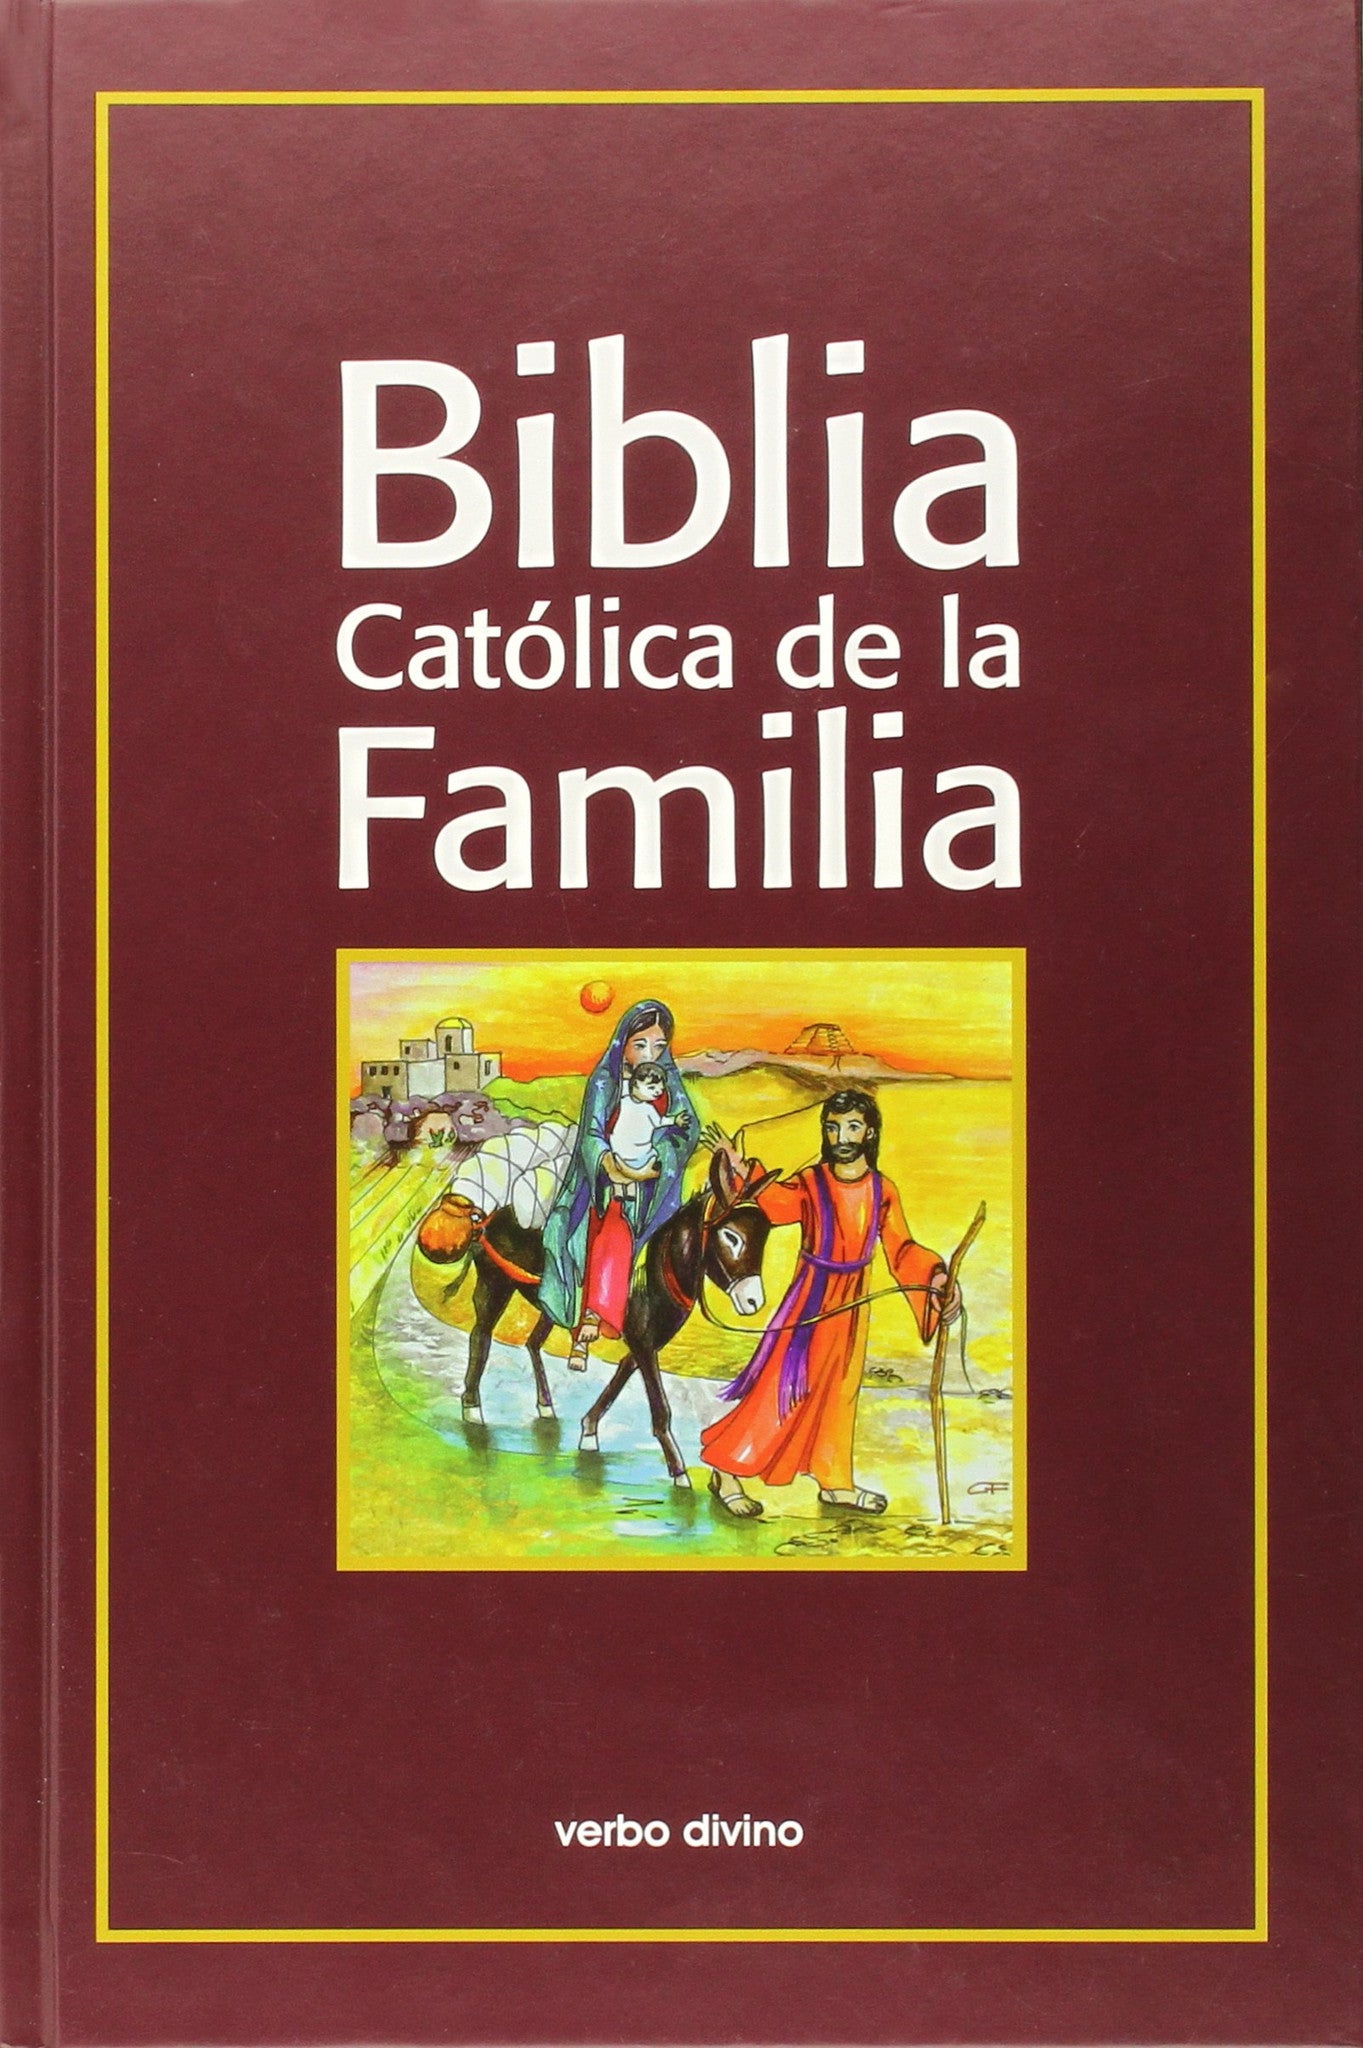 Biblia Catolica de la Familia 2nd Edition